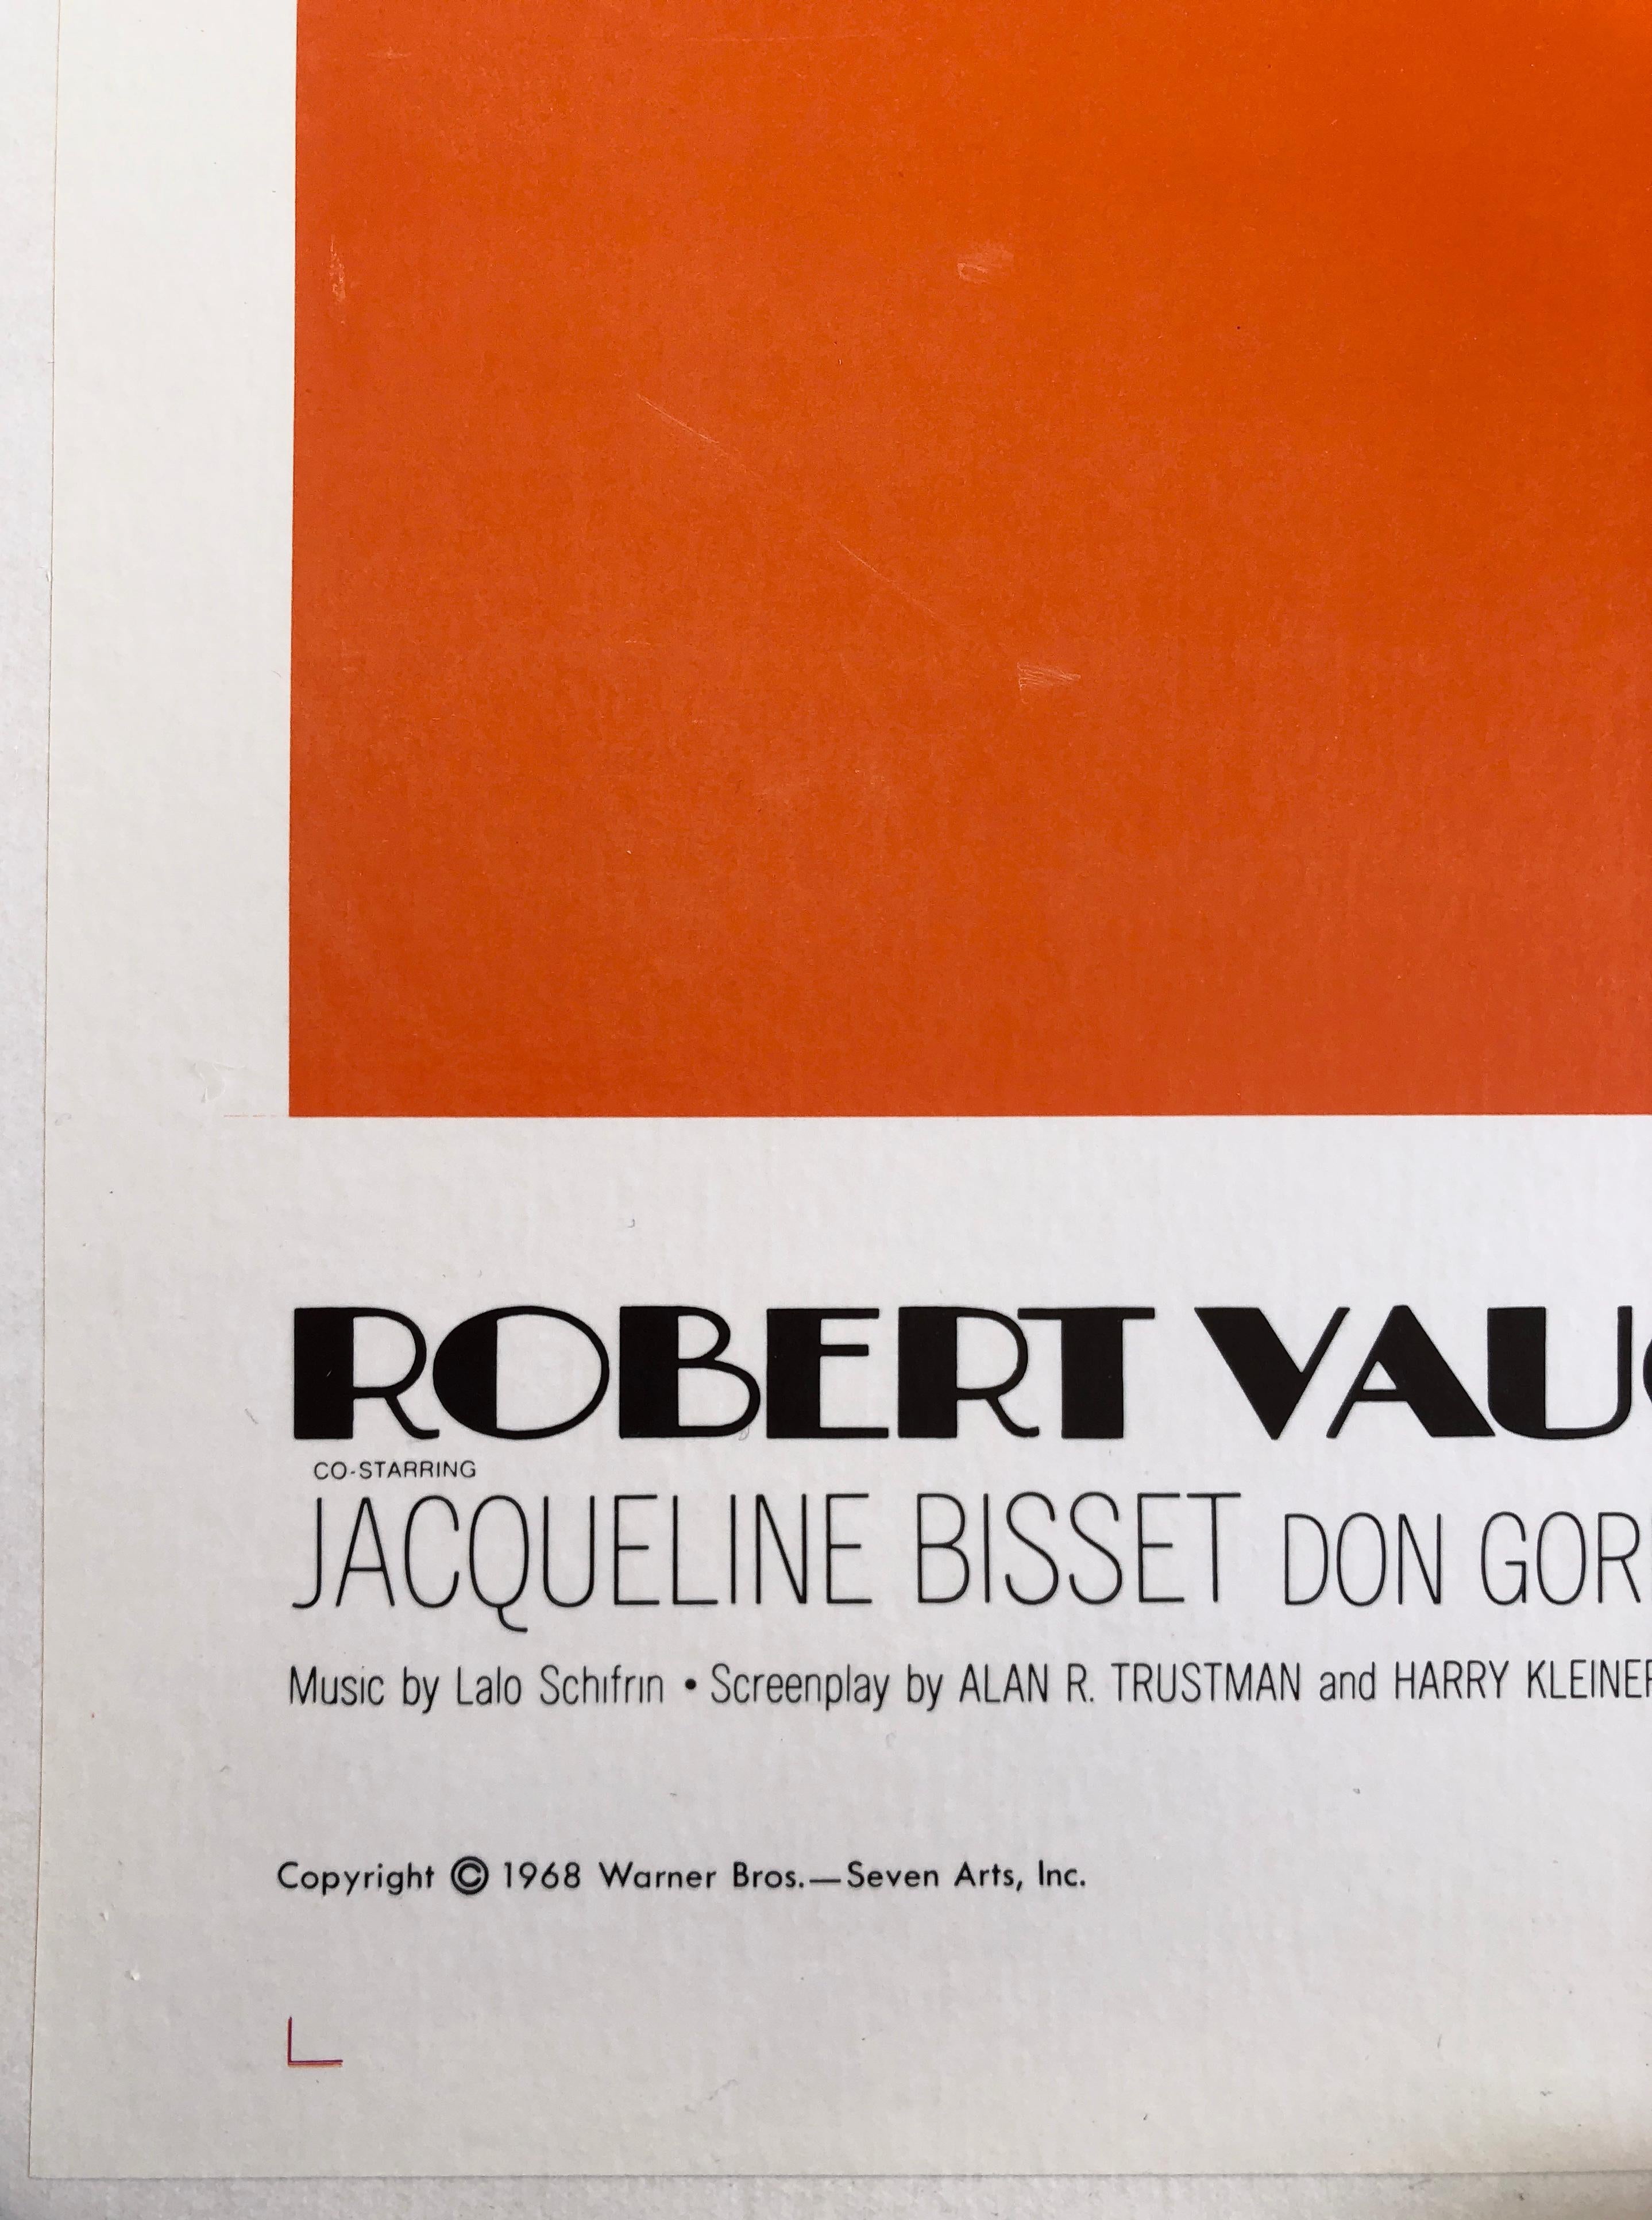 Post-Modern Steve McQueen 'Bullitt' Original Vintage US One Sheet Movie Poster, 1968